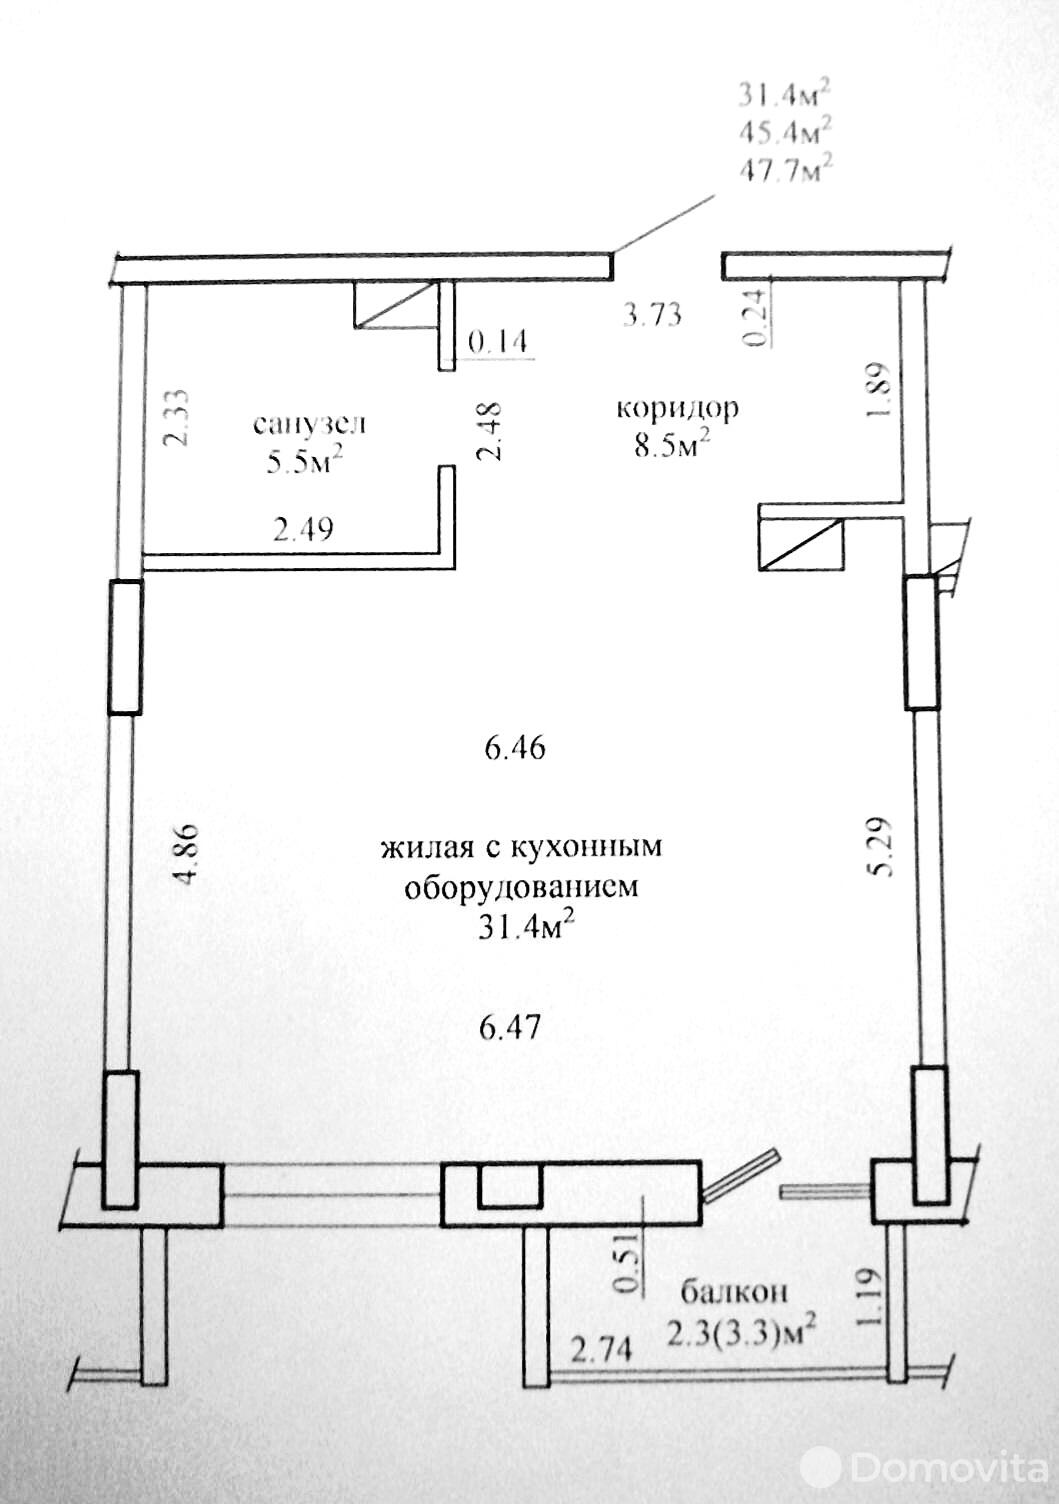 Стоимость продажи квартиры, Минск, пр-т Дзержинского, д. 21